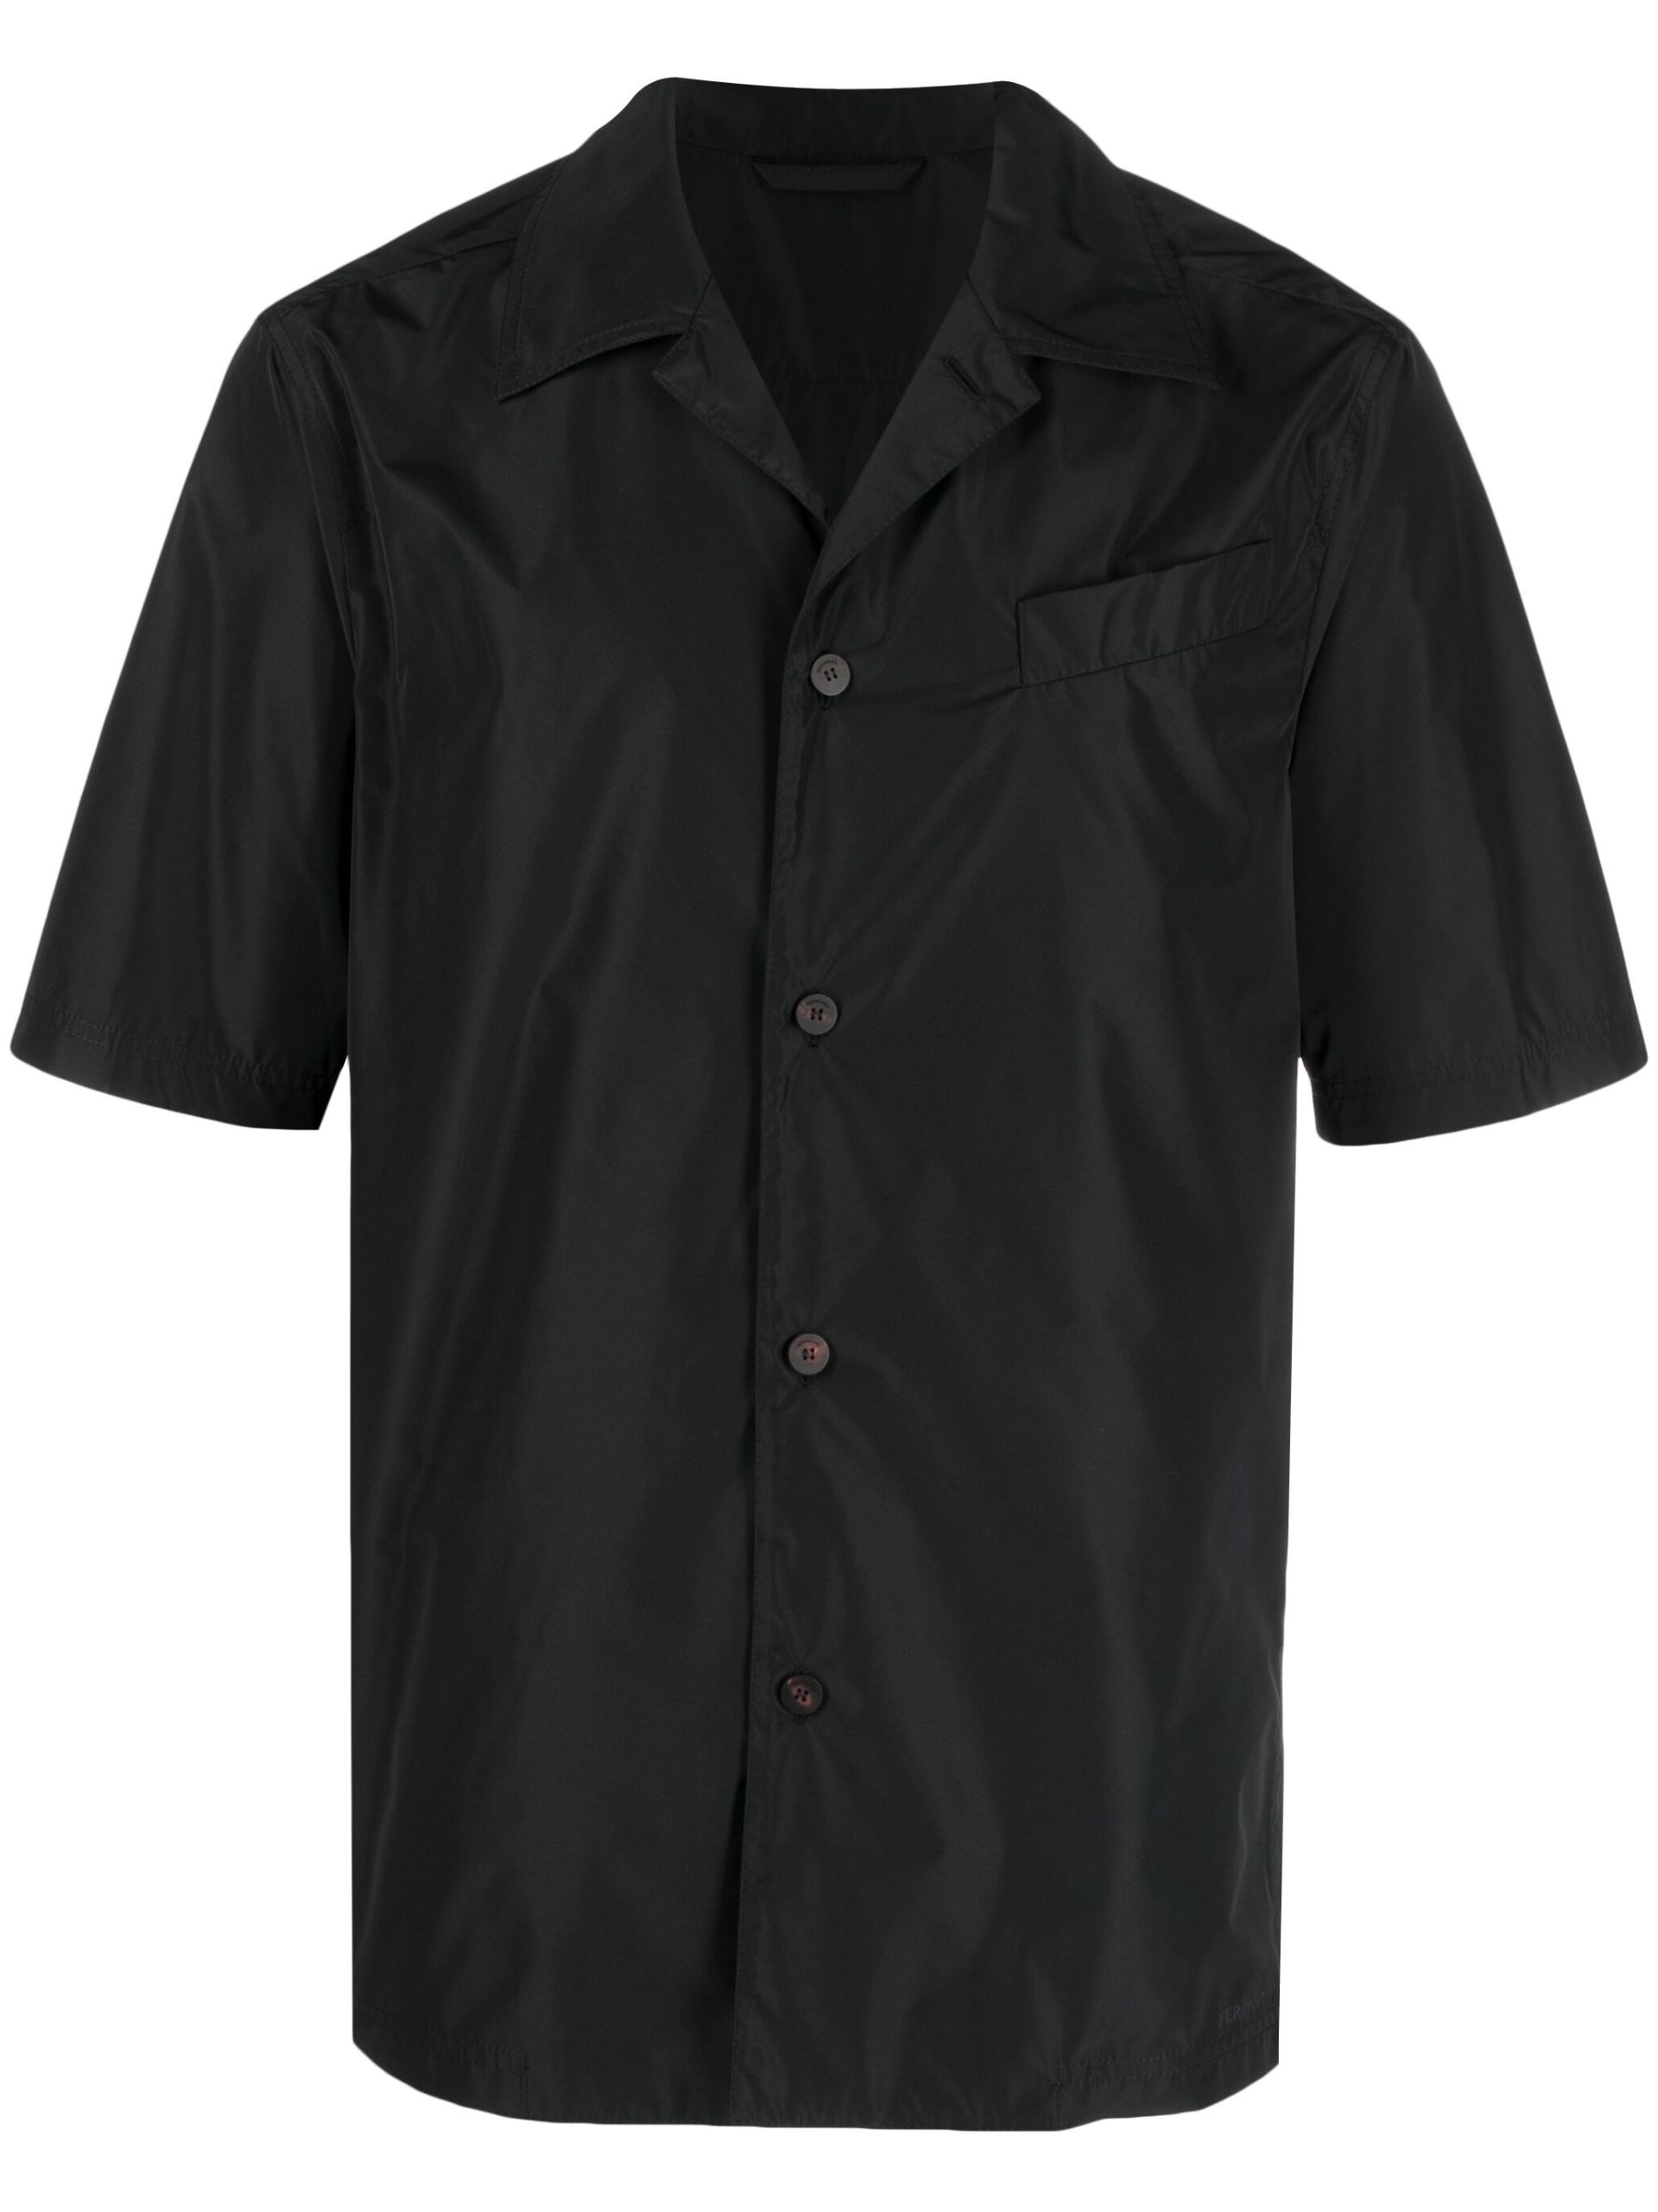 Black Short-Sleeve Button-Up Shirt - 1